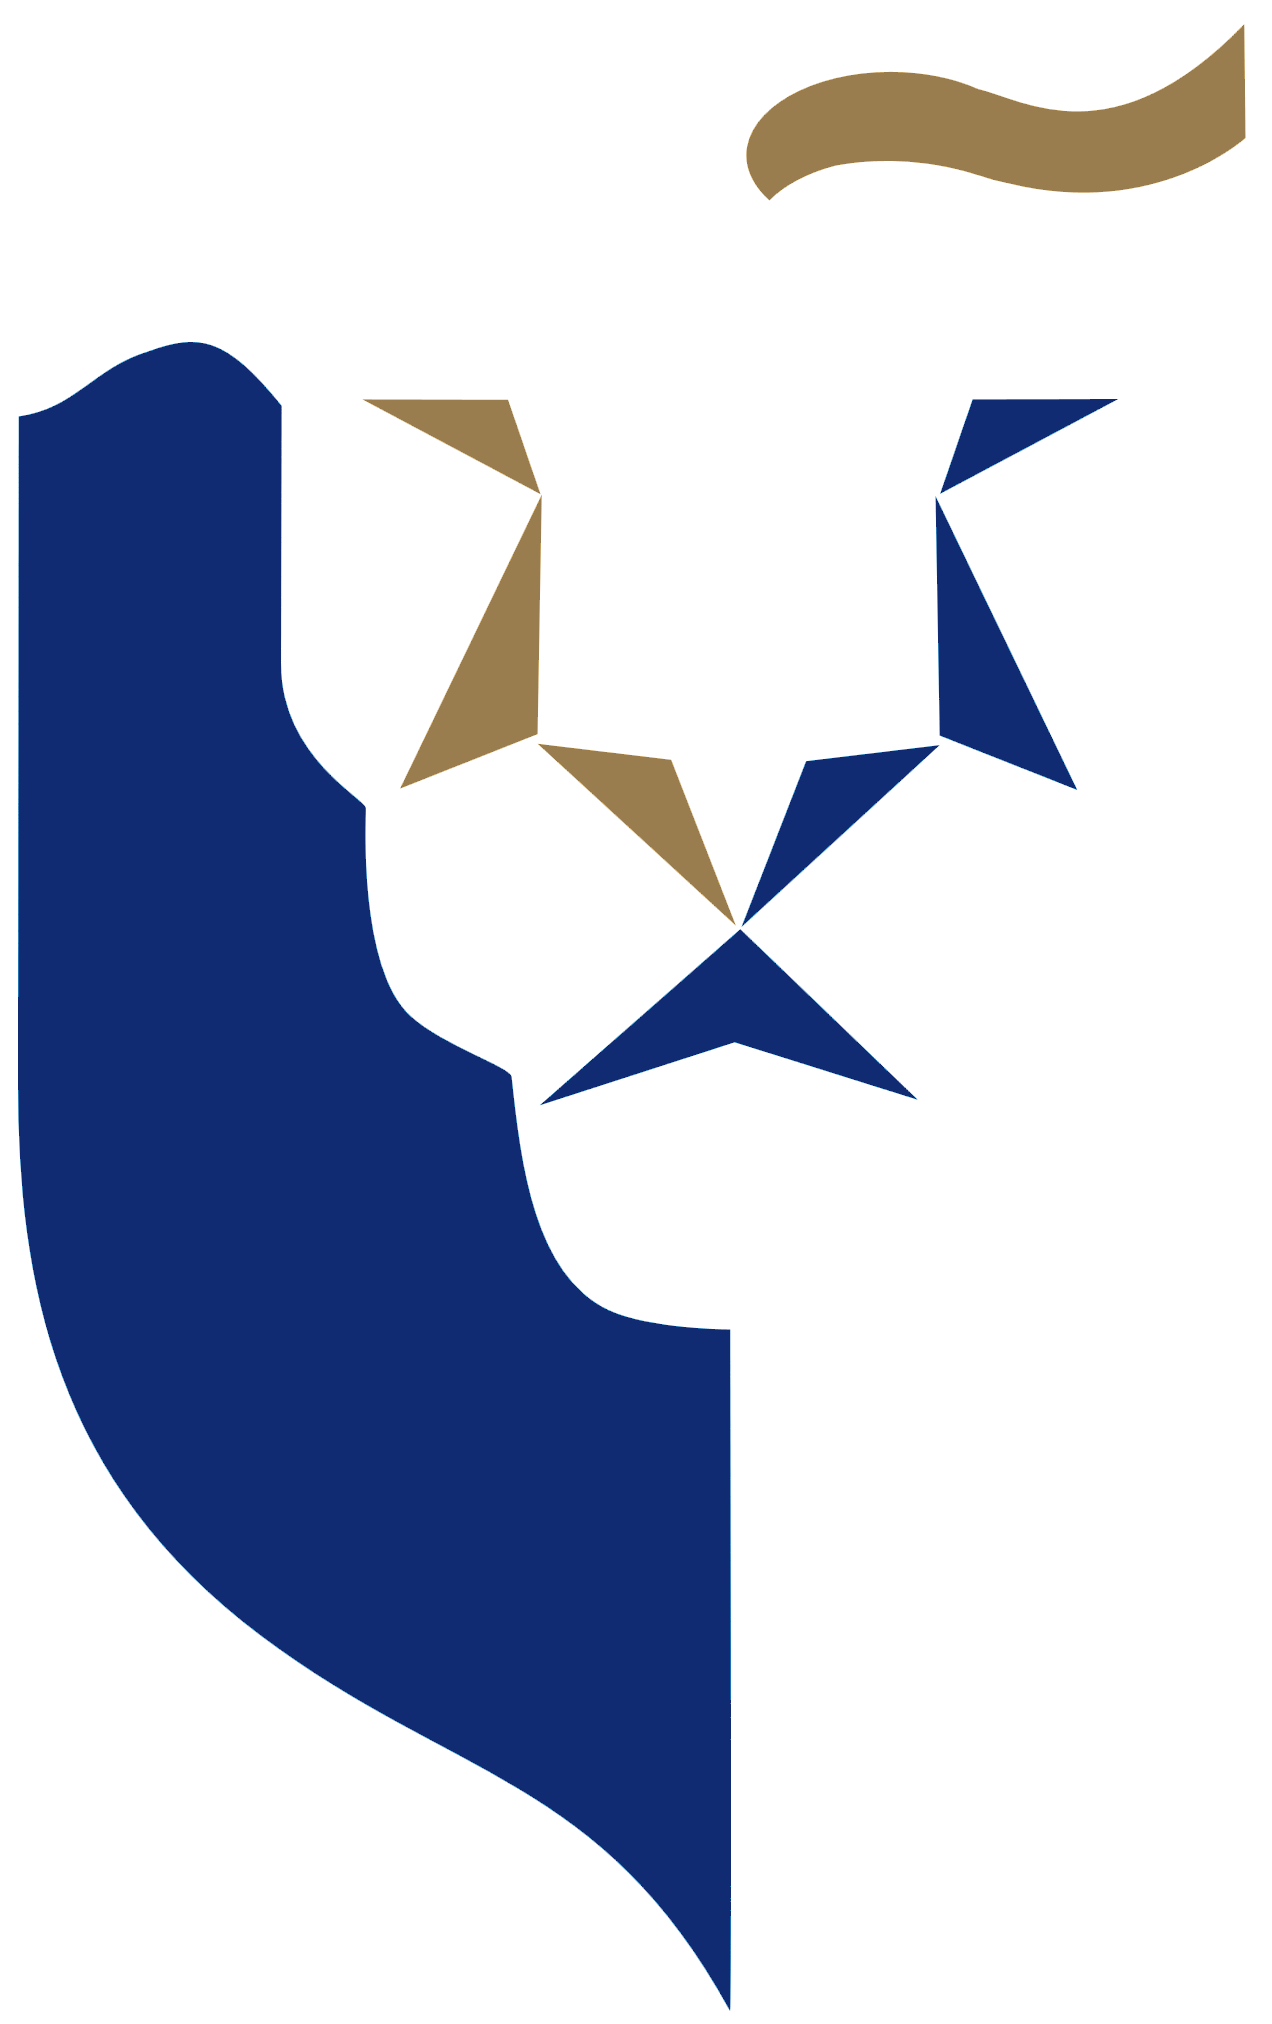 Singapore-Management-University-logo